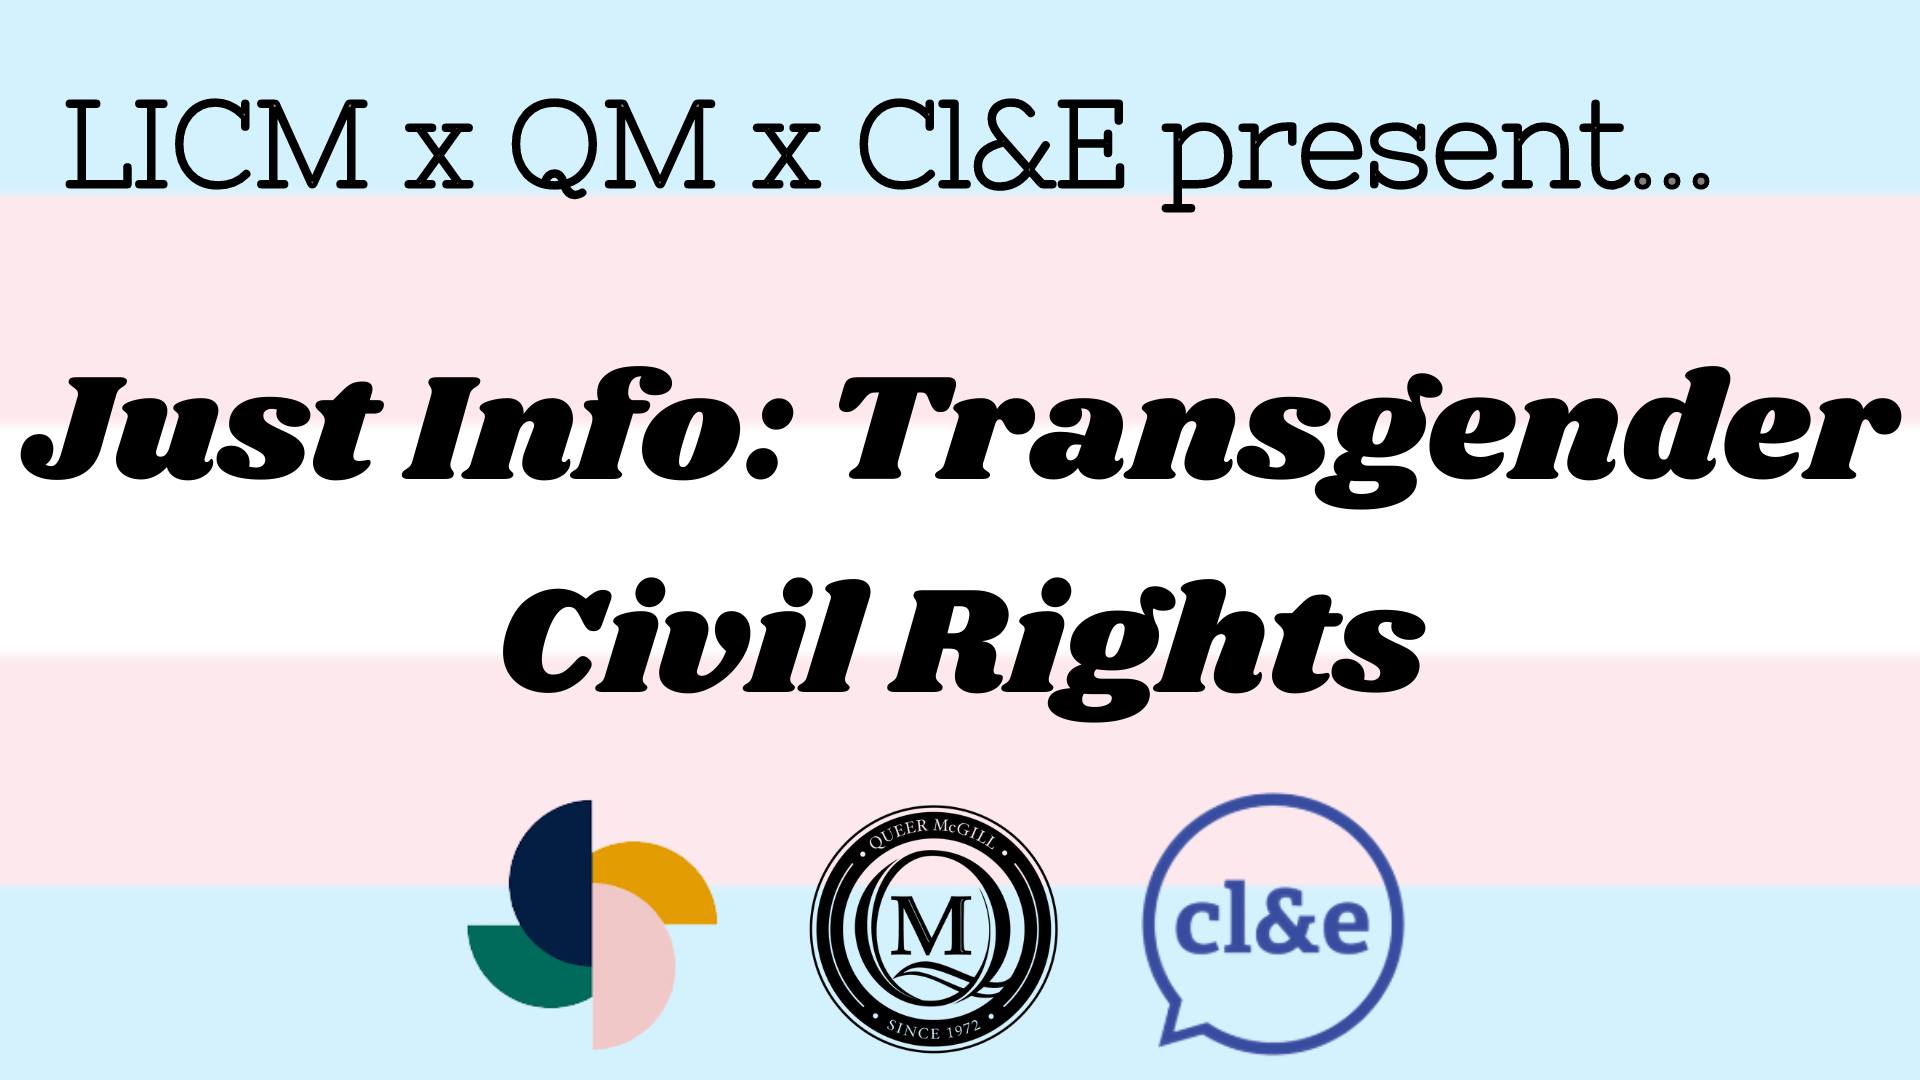 Just Info: Transgender Civil Rights